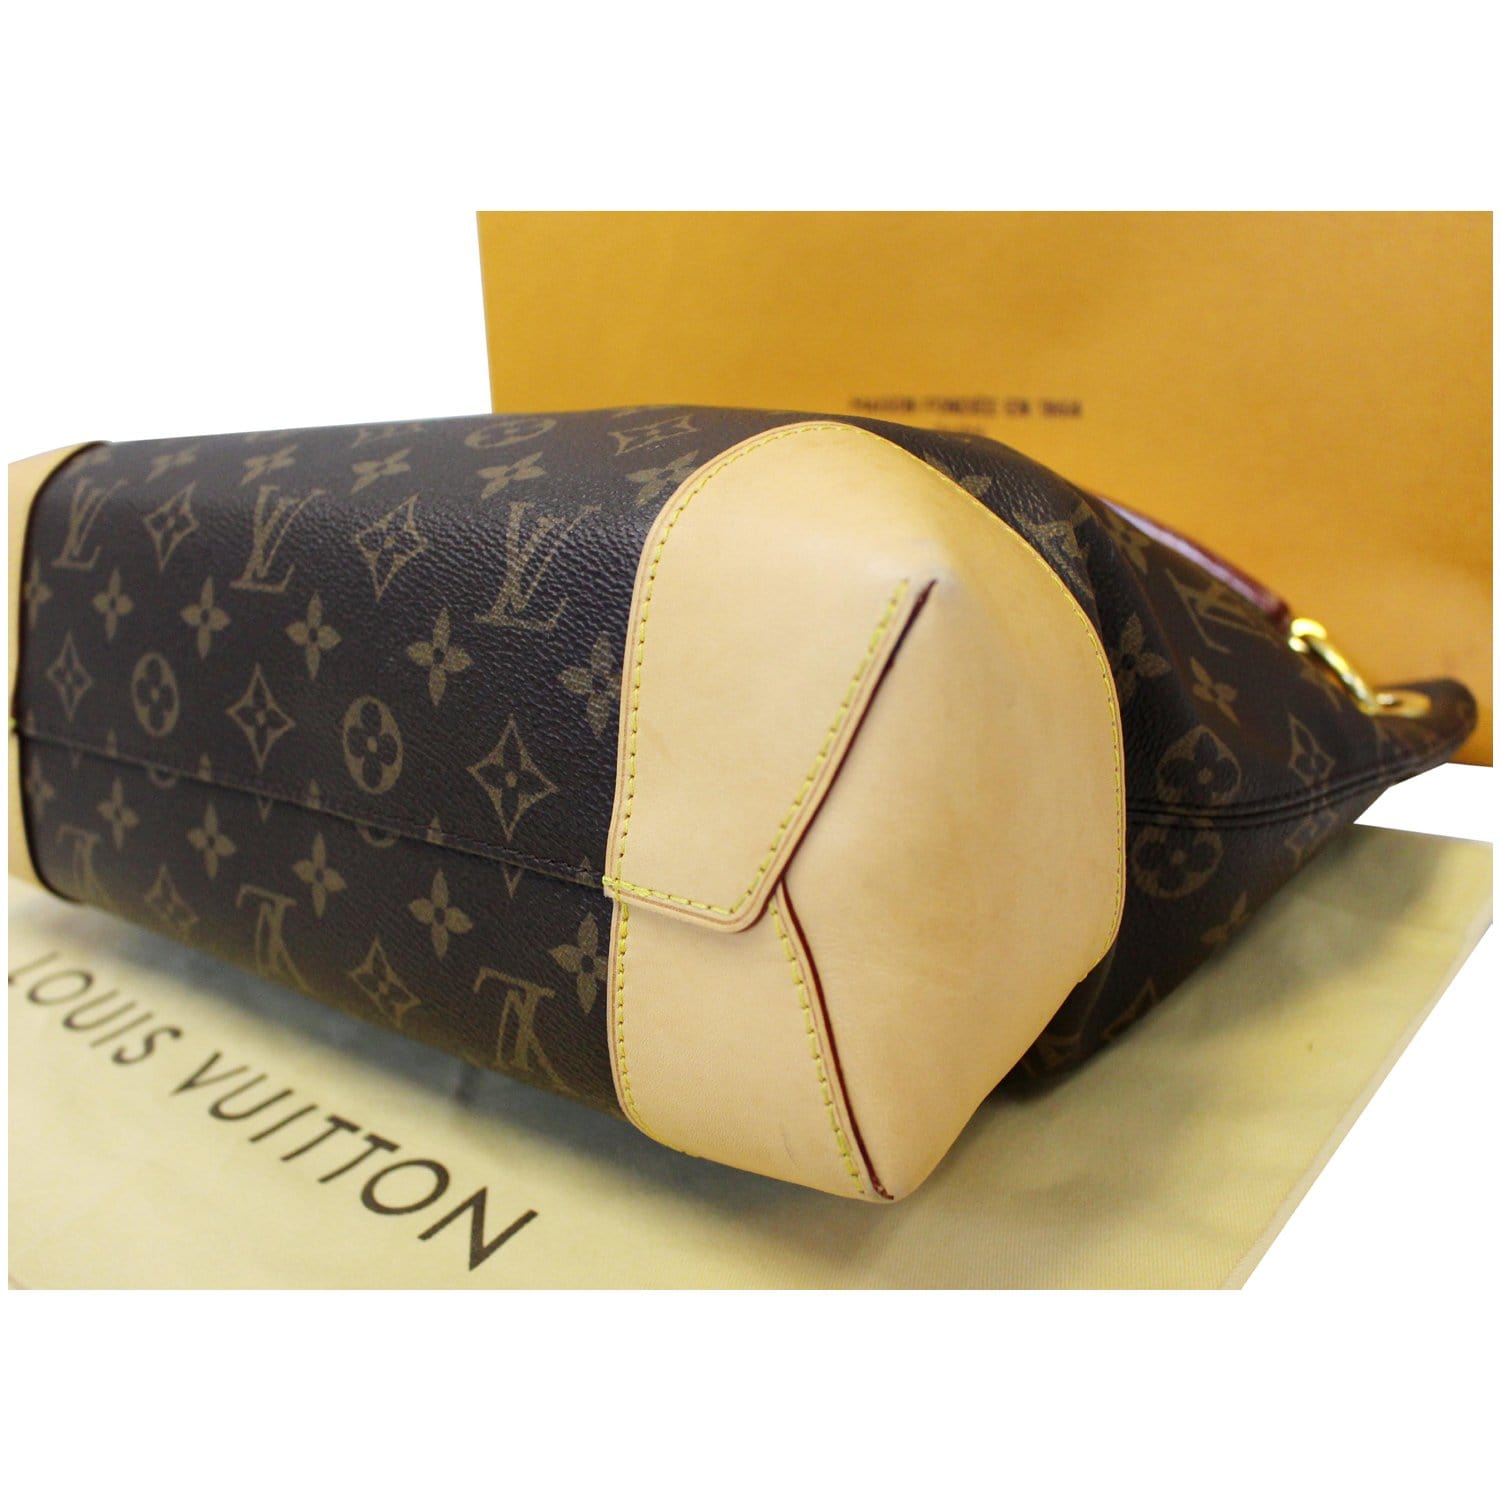 Louis Vuitton 2016 Monogram Berri MM - Brown Hobos, Handbags